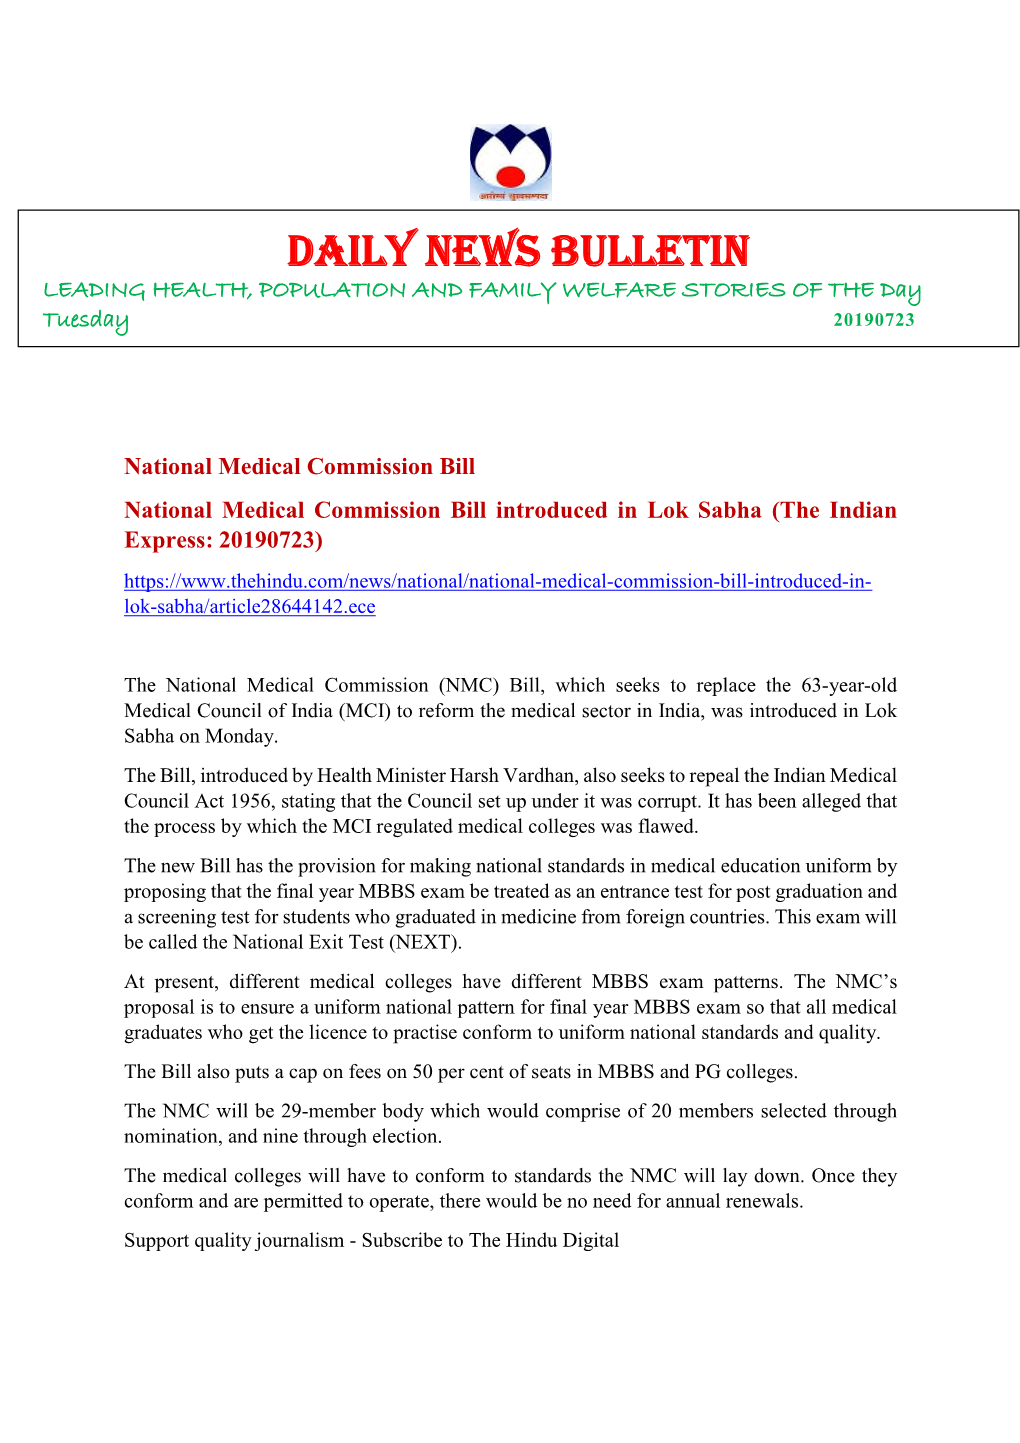 Daily Health News Bulletin